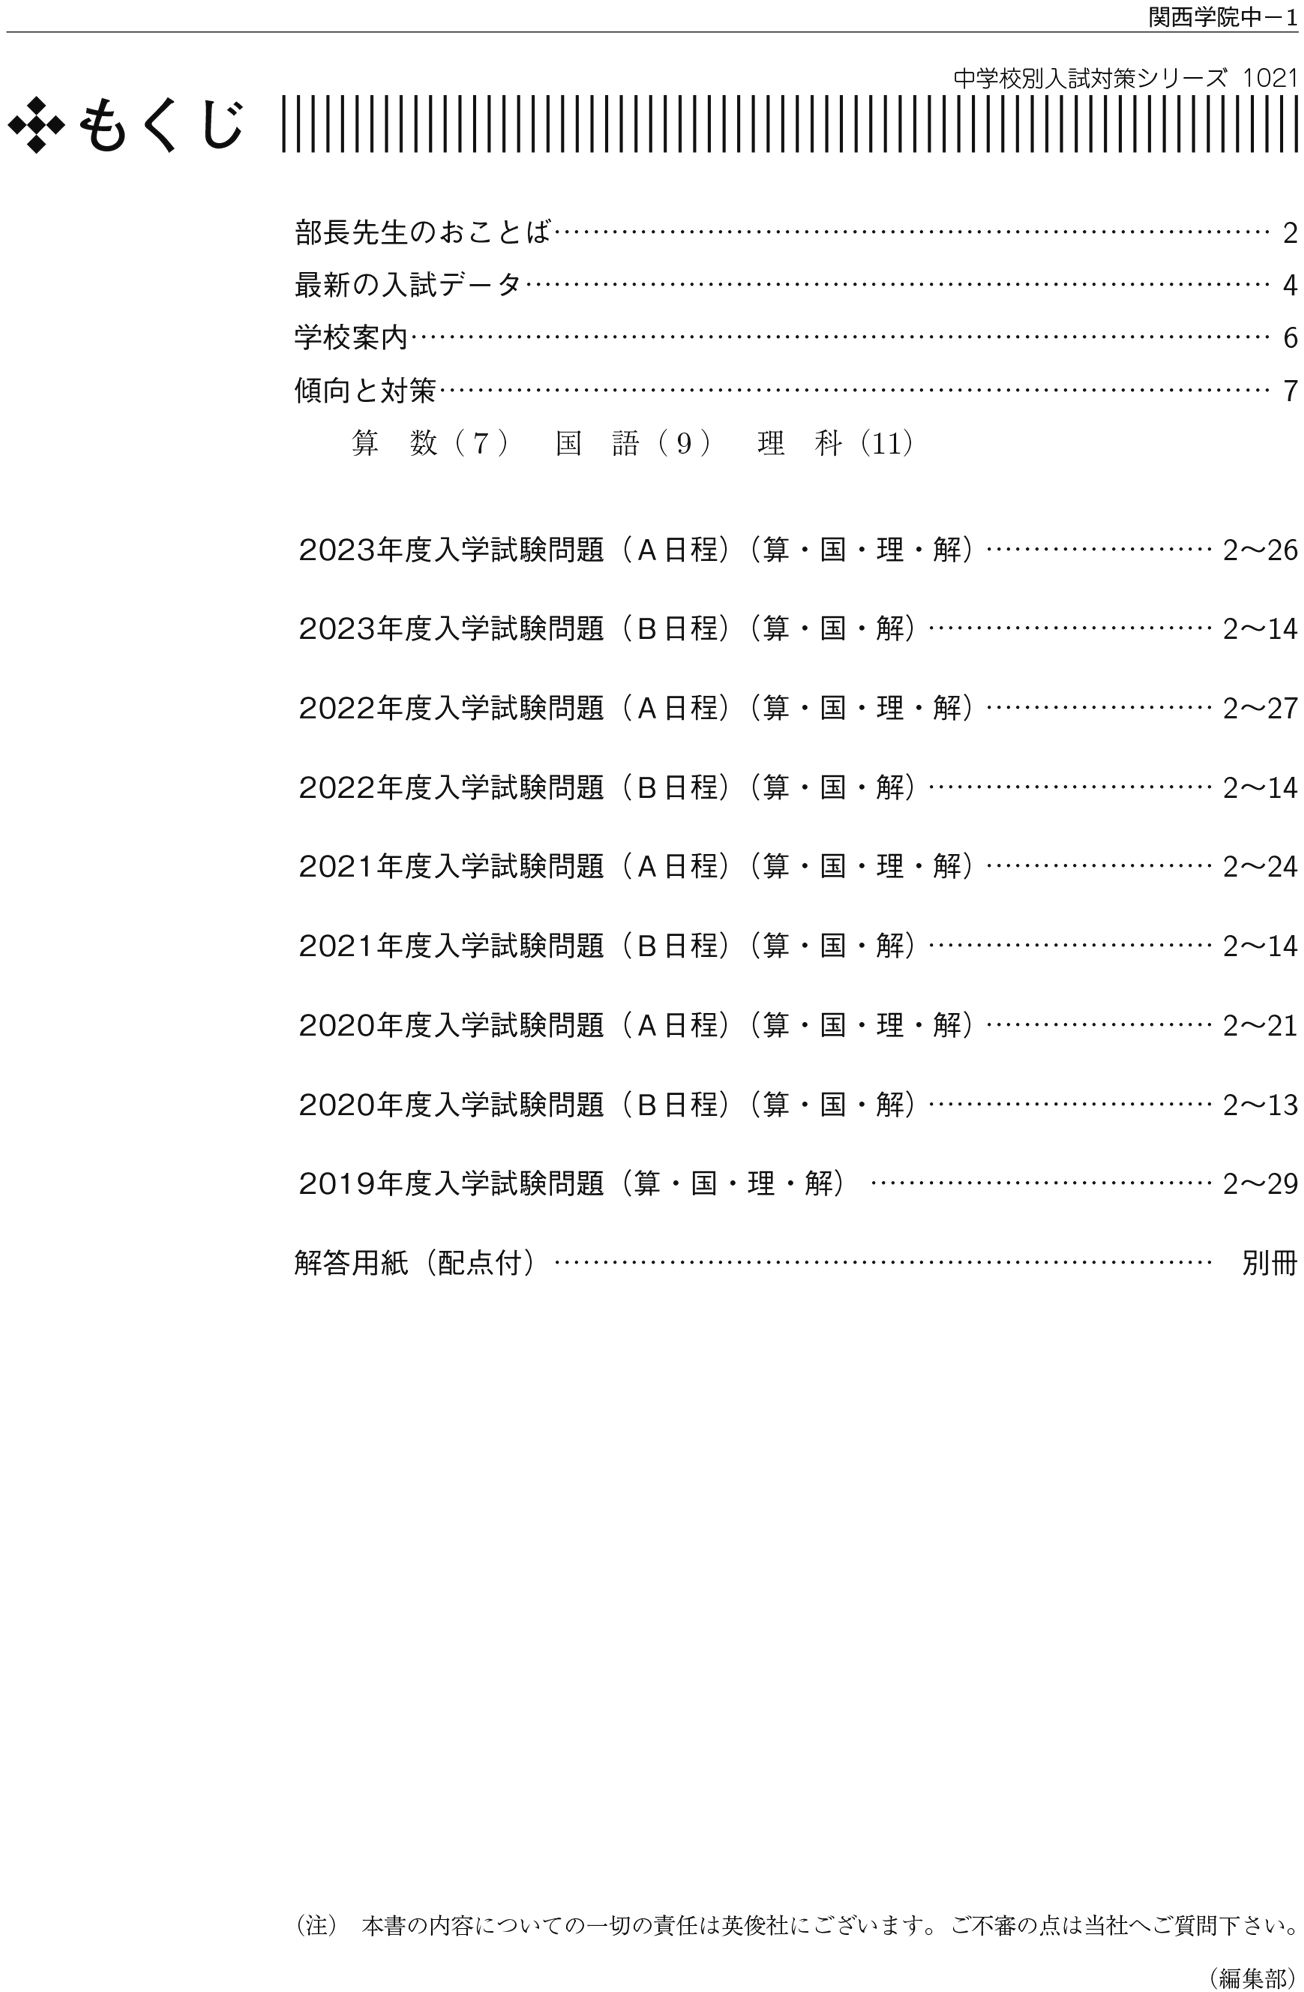 関西学院中学部 2014年度受験用 赤本1021 (中学校別入試対策シリーズ)コンディションランク